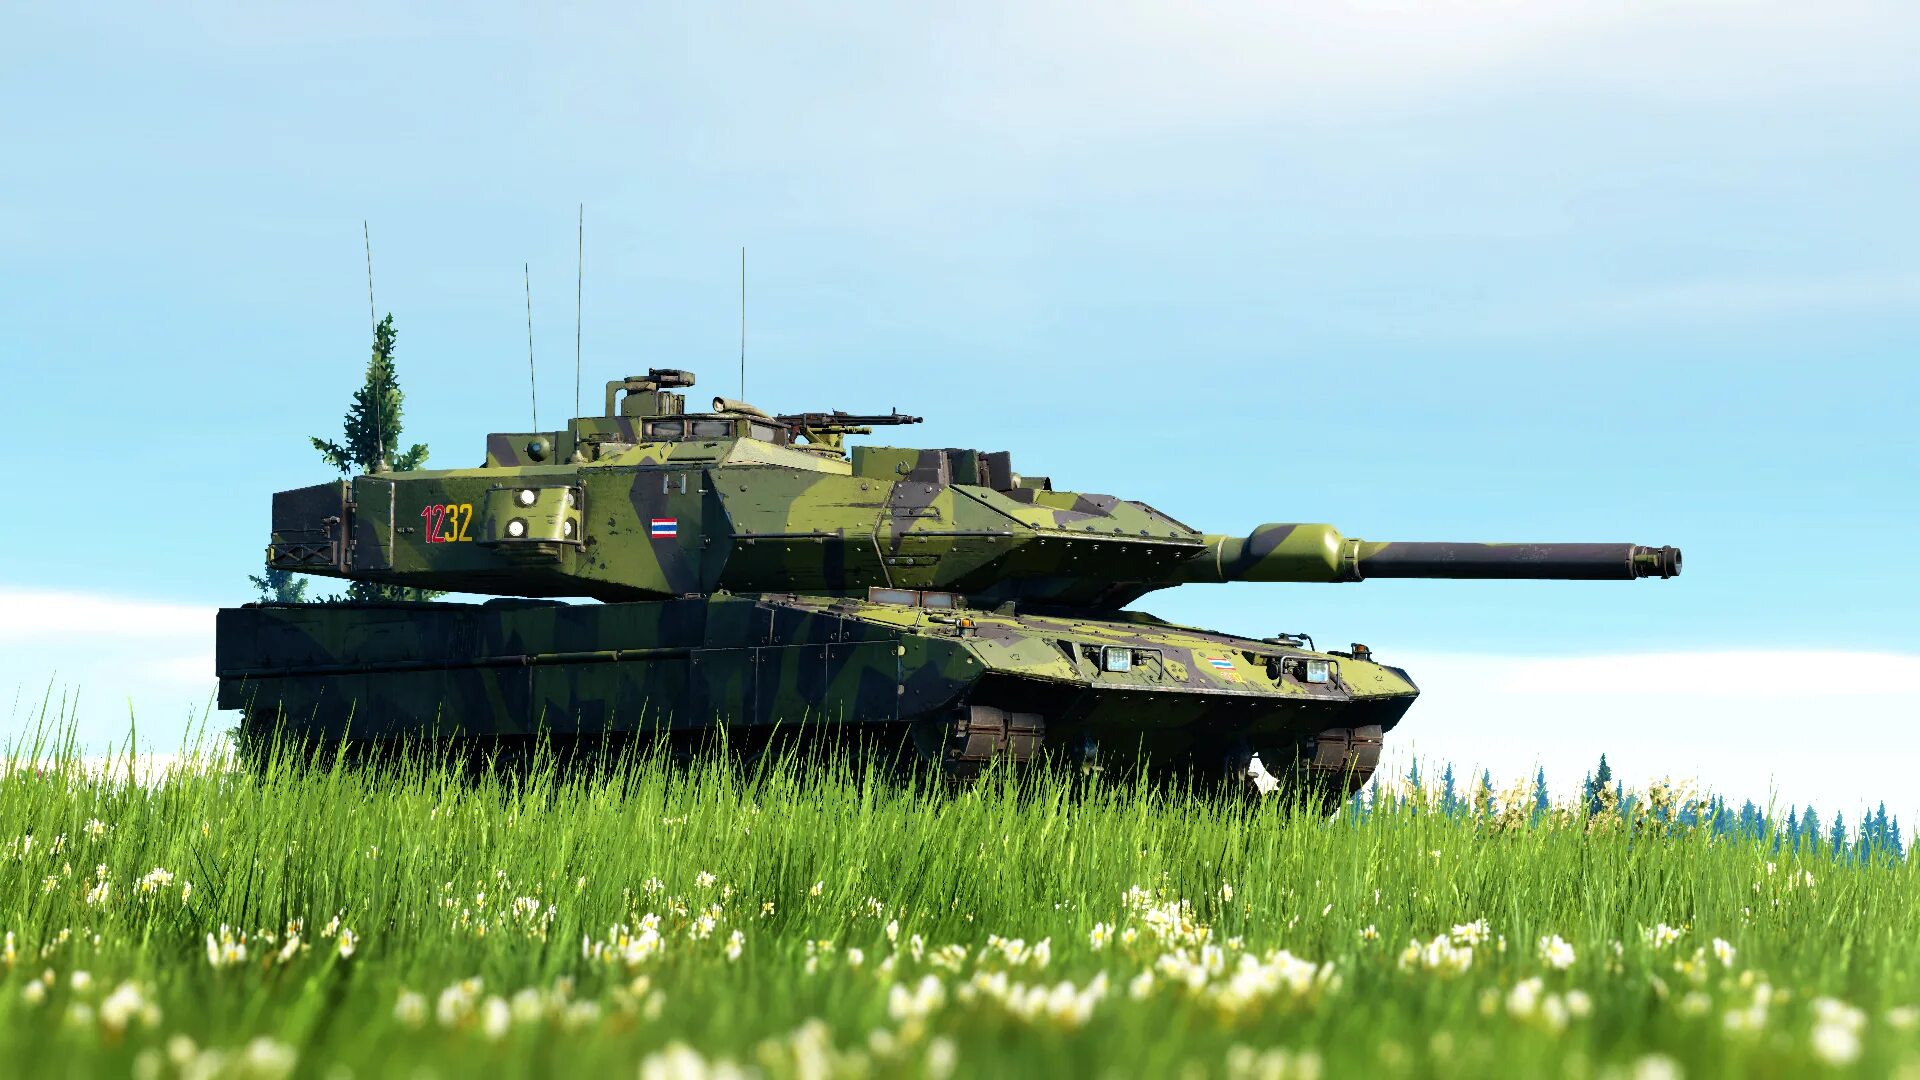 Strv 122b. Strv 122 танк. Шведский танк Stridsvagn 122. ОБТ Strv 122. Strv 122 Leopard 2a5s.